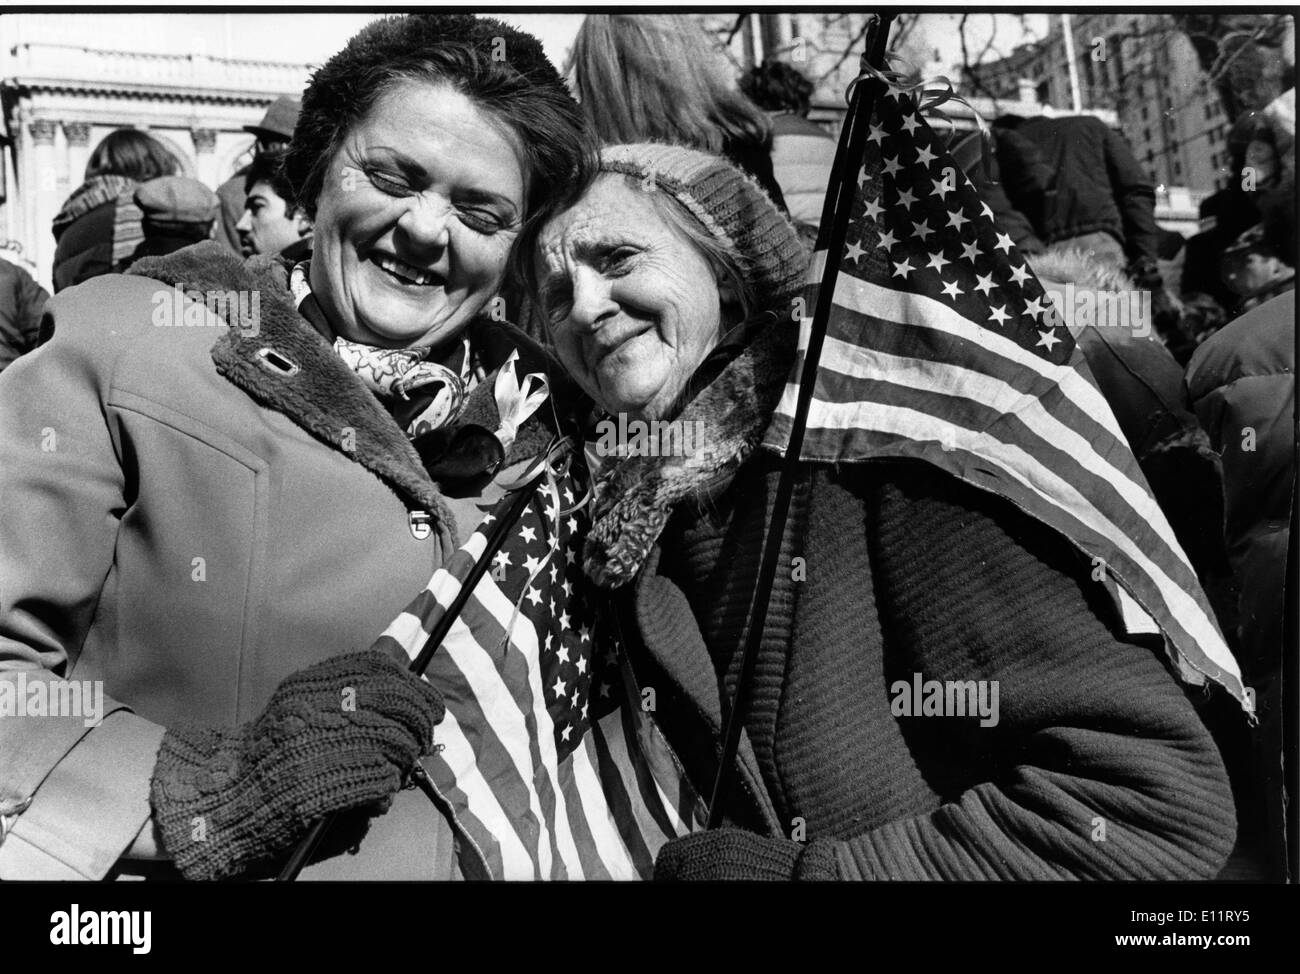 8. November 1979 - Washington, District Of Columbia, USA - iranischen Amerikaner unterstützen USA während einer Protestaktion gegen den Iran Geisel-Krise-444 Tagen. Die Geiselnehmer, erklärt ihre Solidarität mit anderen '' unterdrückten Minderheiten '' und '' der bevorzugte Platz der Frauen im Islam,'' veröffentlicht 13 Frauen und schwarze in der Mitte November 1979, so dass nur eine schwarze und zwei Frauen Geiseln. Eine weitere Geisel, Richard Queen, erschien im Juli 1980, nachdem er mit Multipler Sklerose diagnostiziert wurde. Die restlichen 52 Geiseln wurden bis Januar 1981 gefangen gehalten. Stockfoto